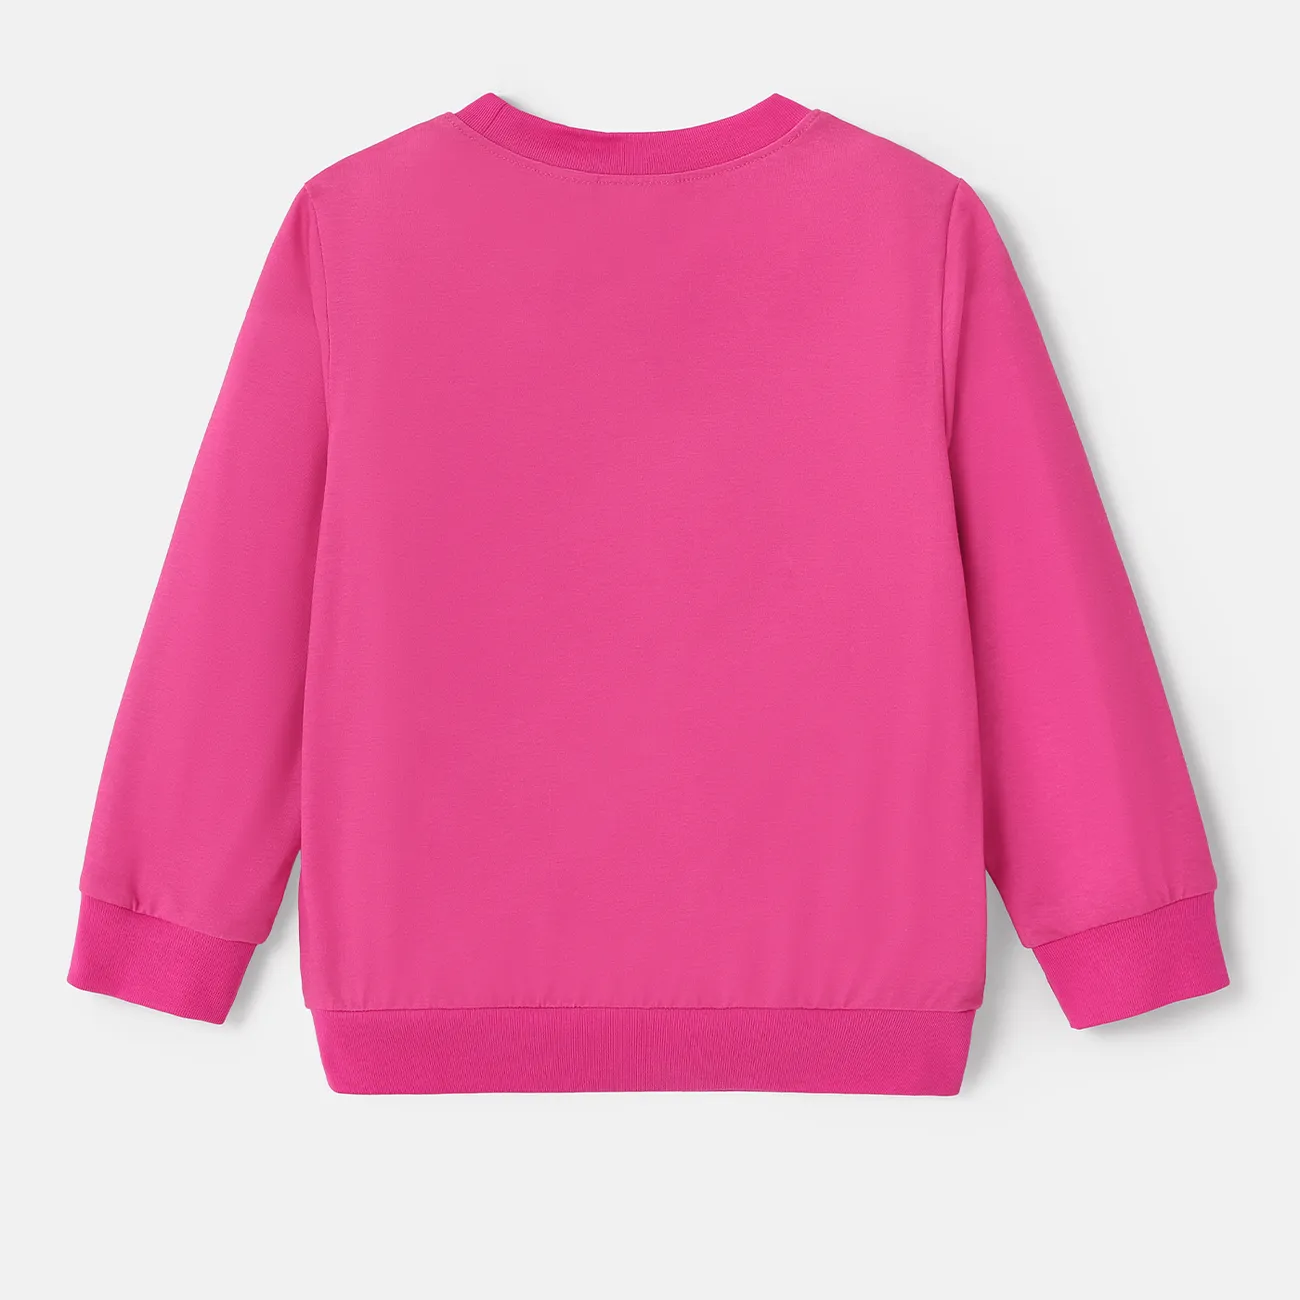 Disney Princess Criança Menina Bonito Sweatshirt cor de rosa big image 1